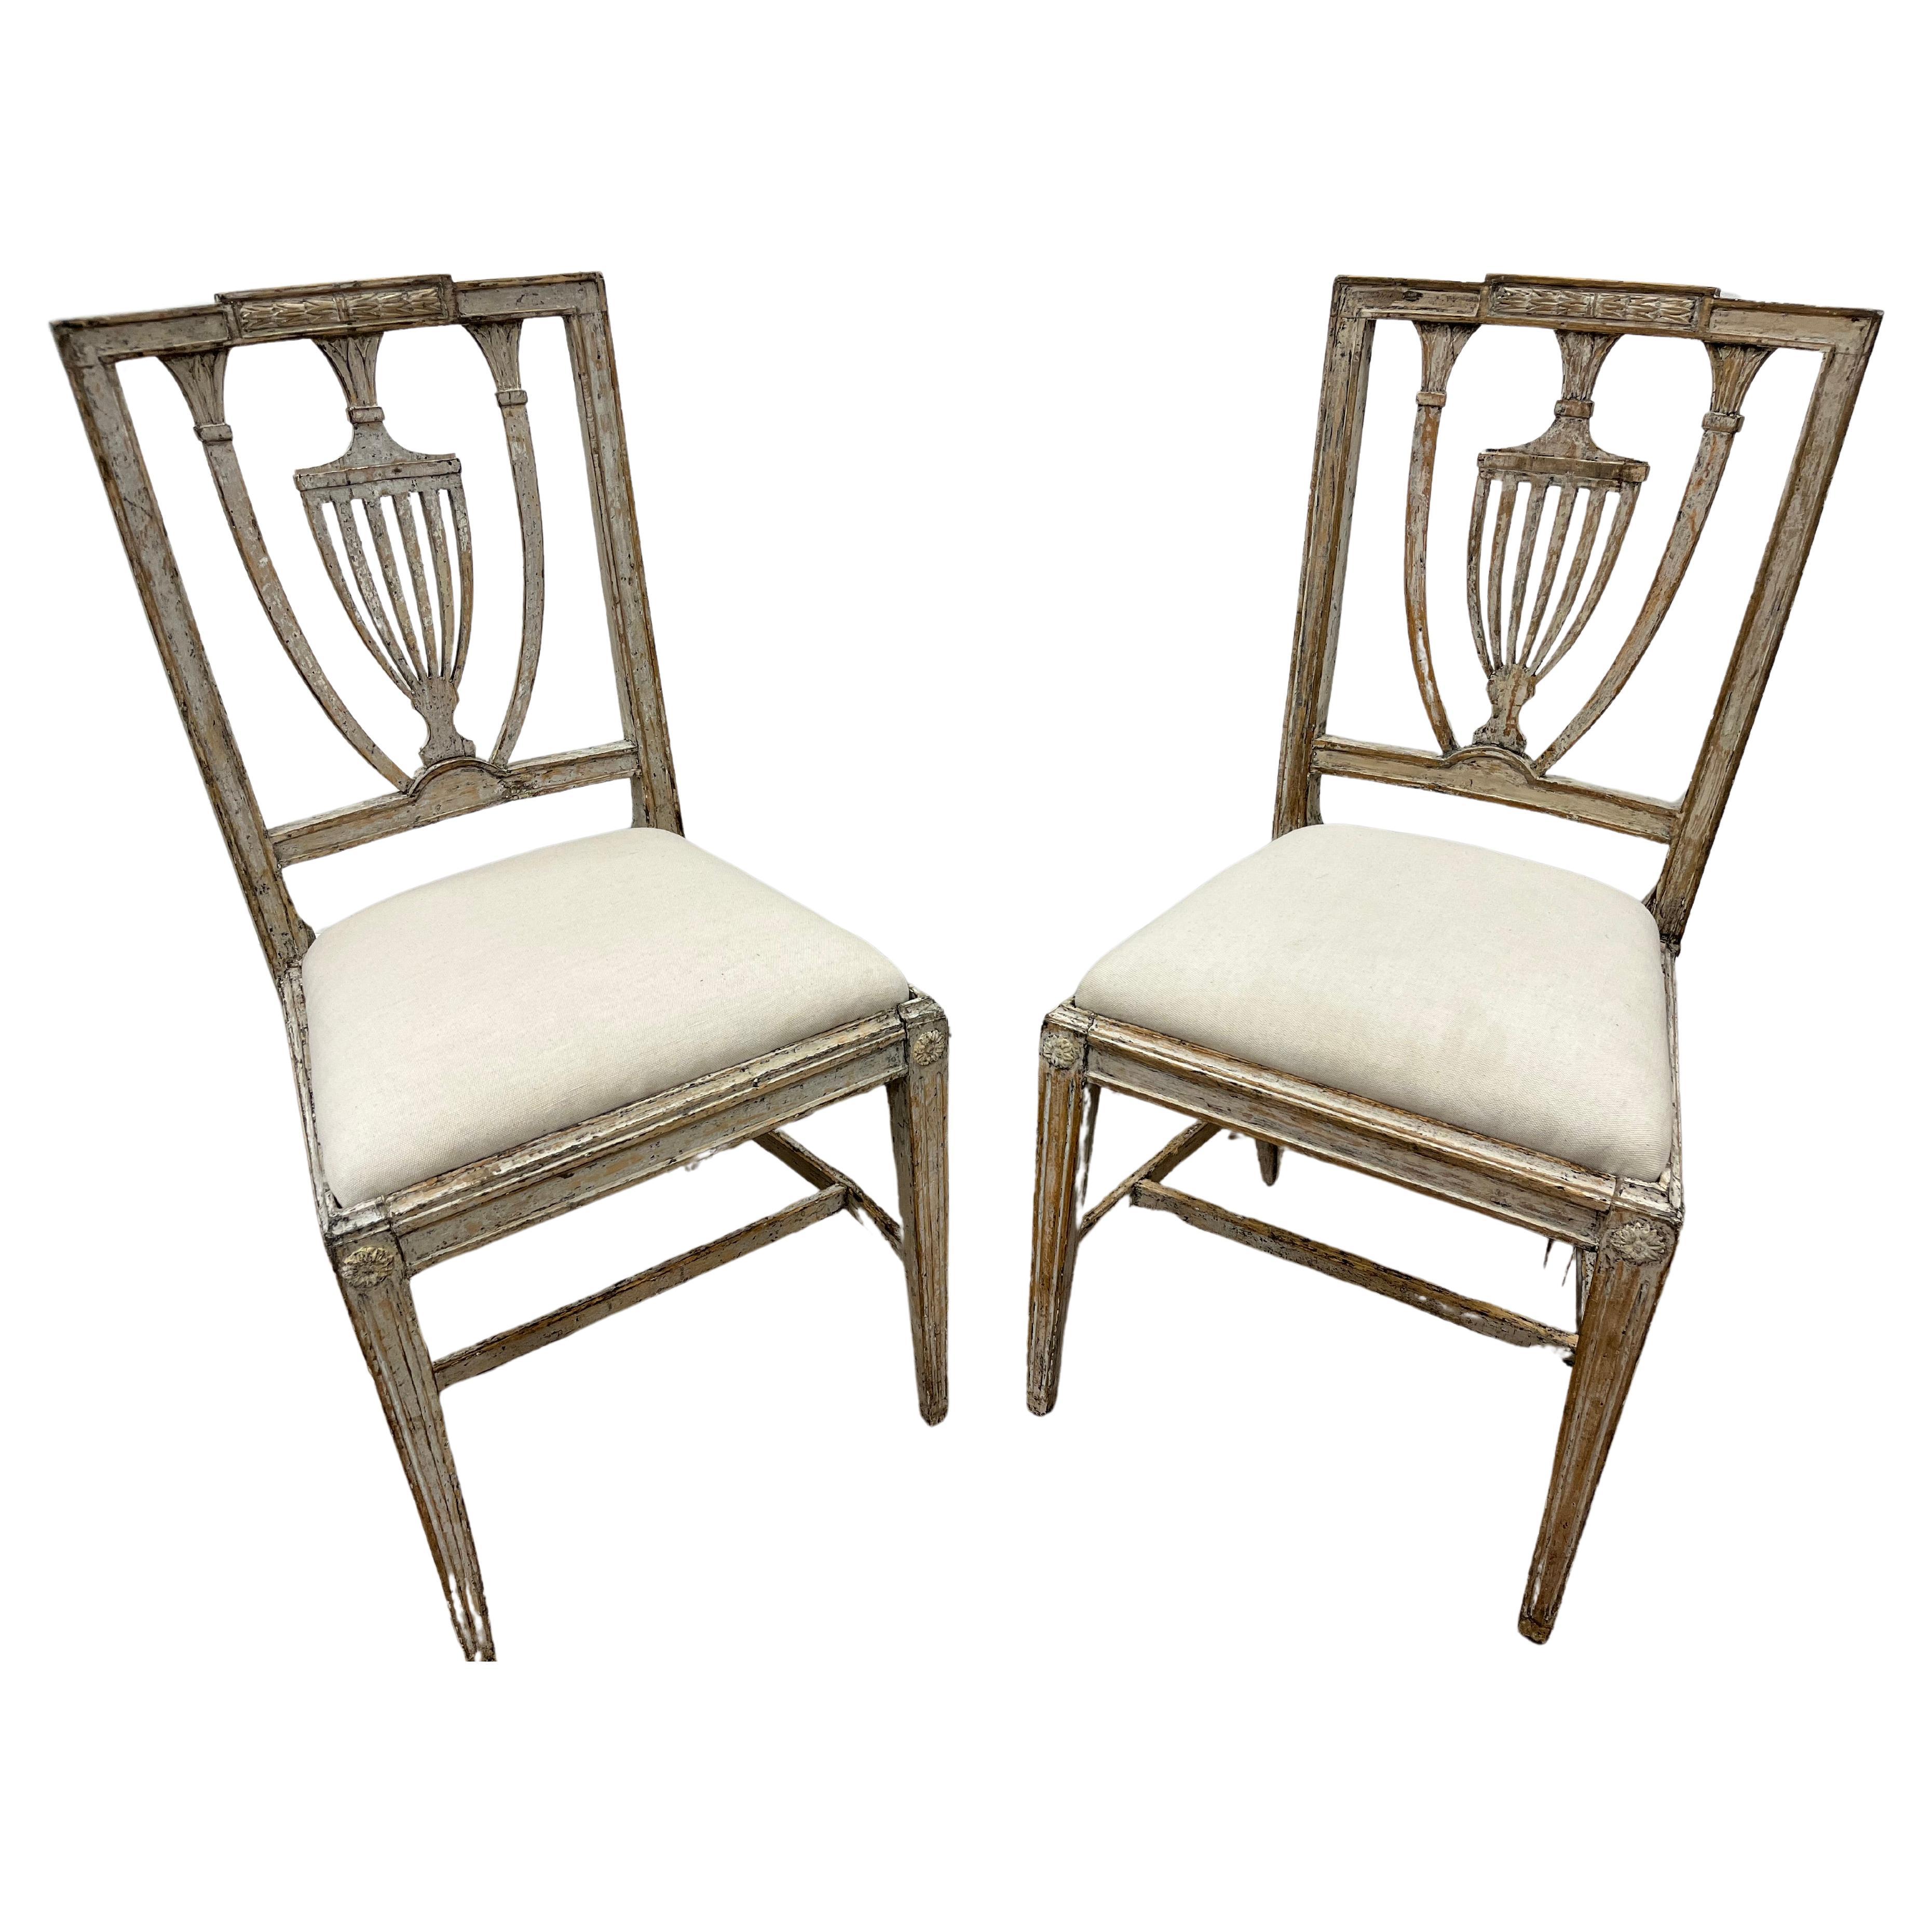 Paire de chaises gustaviennes suédoises du 19ème siècle